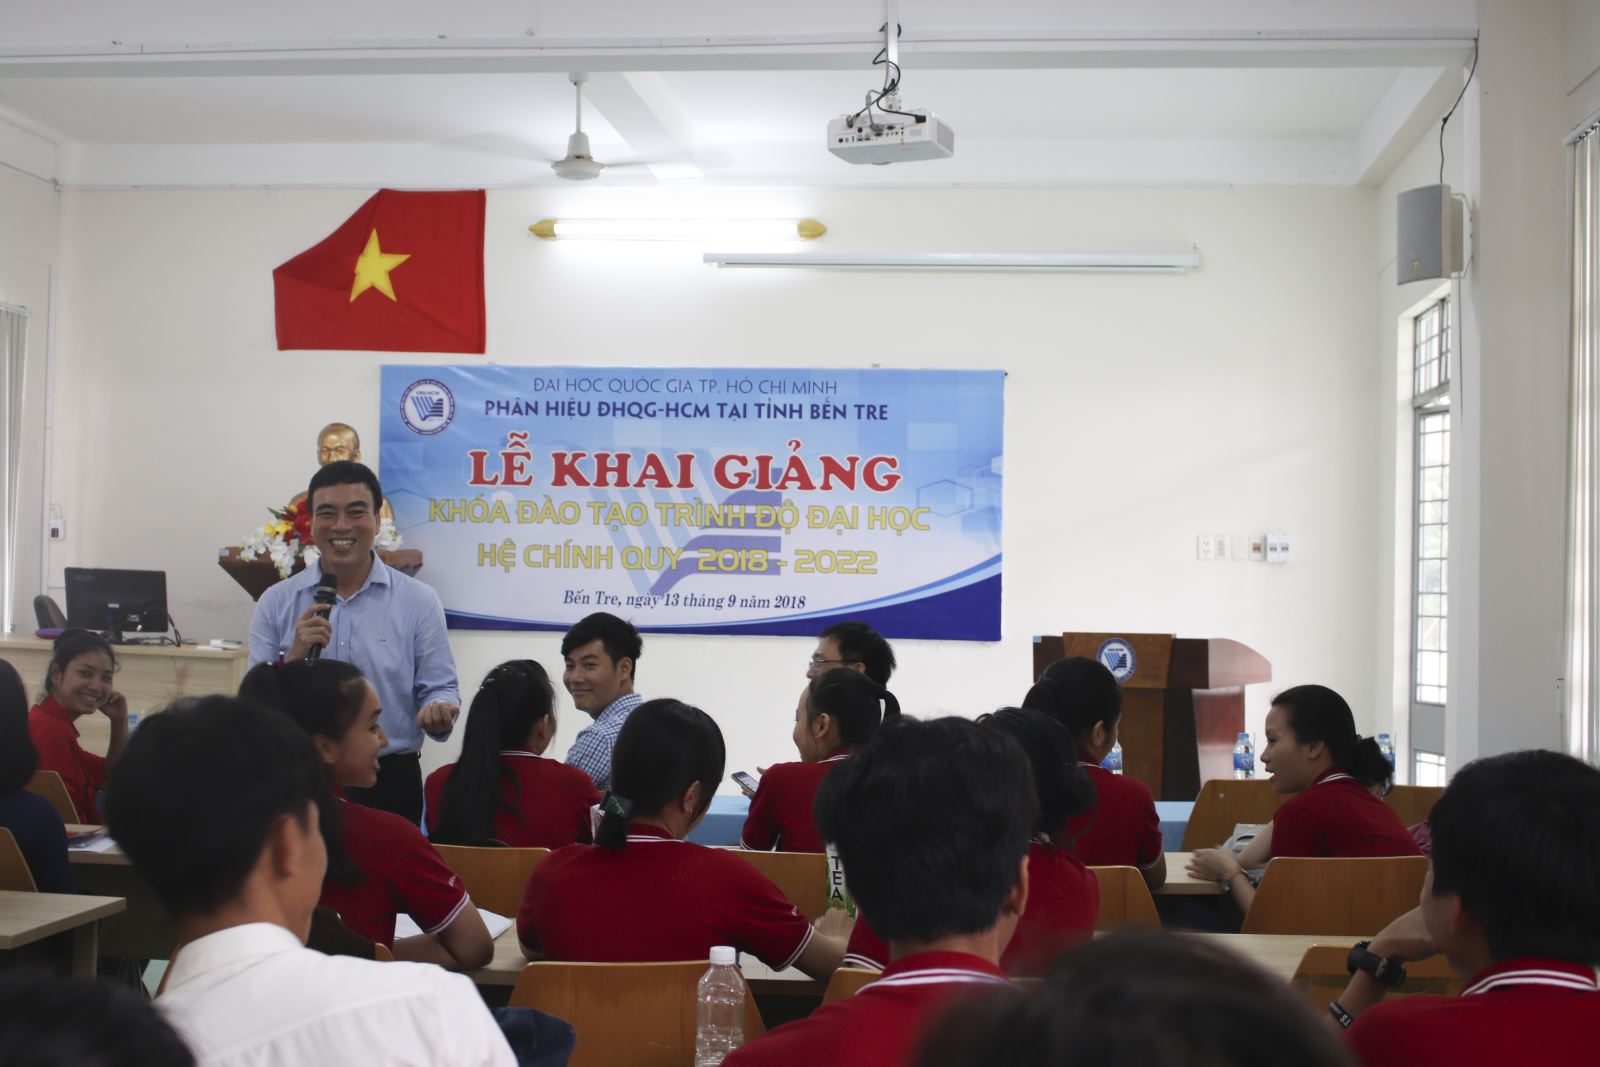 Phân hiệu ĐHQG-HCM tại tỉnh Bến Tre tổ chức tuần sinh hoạt công dân đầu khóa cho Tân sinh viên Khóa 2018